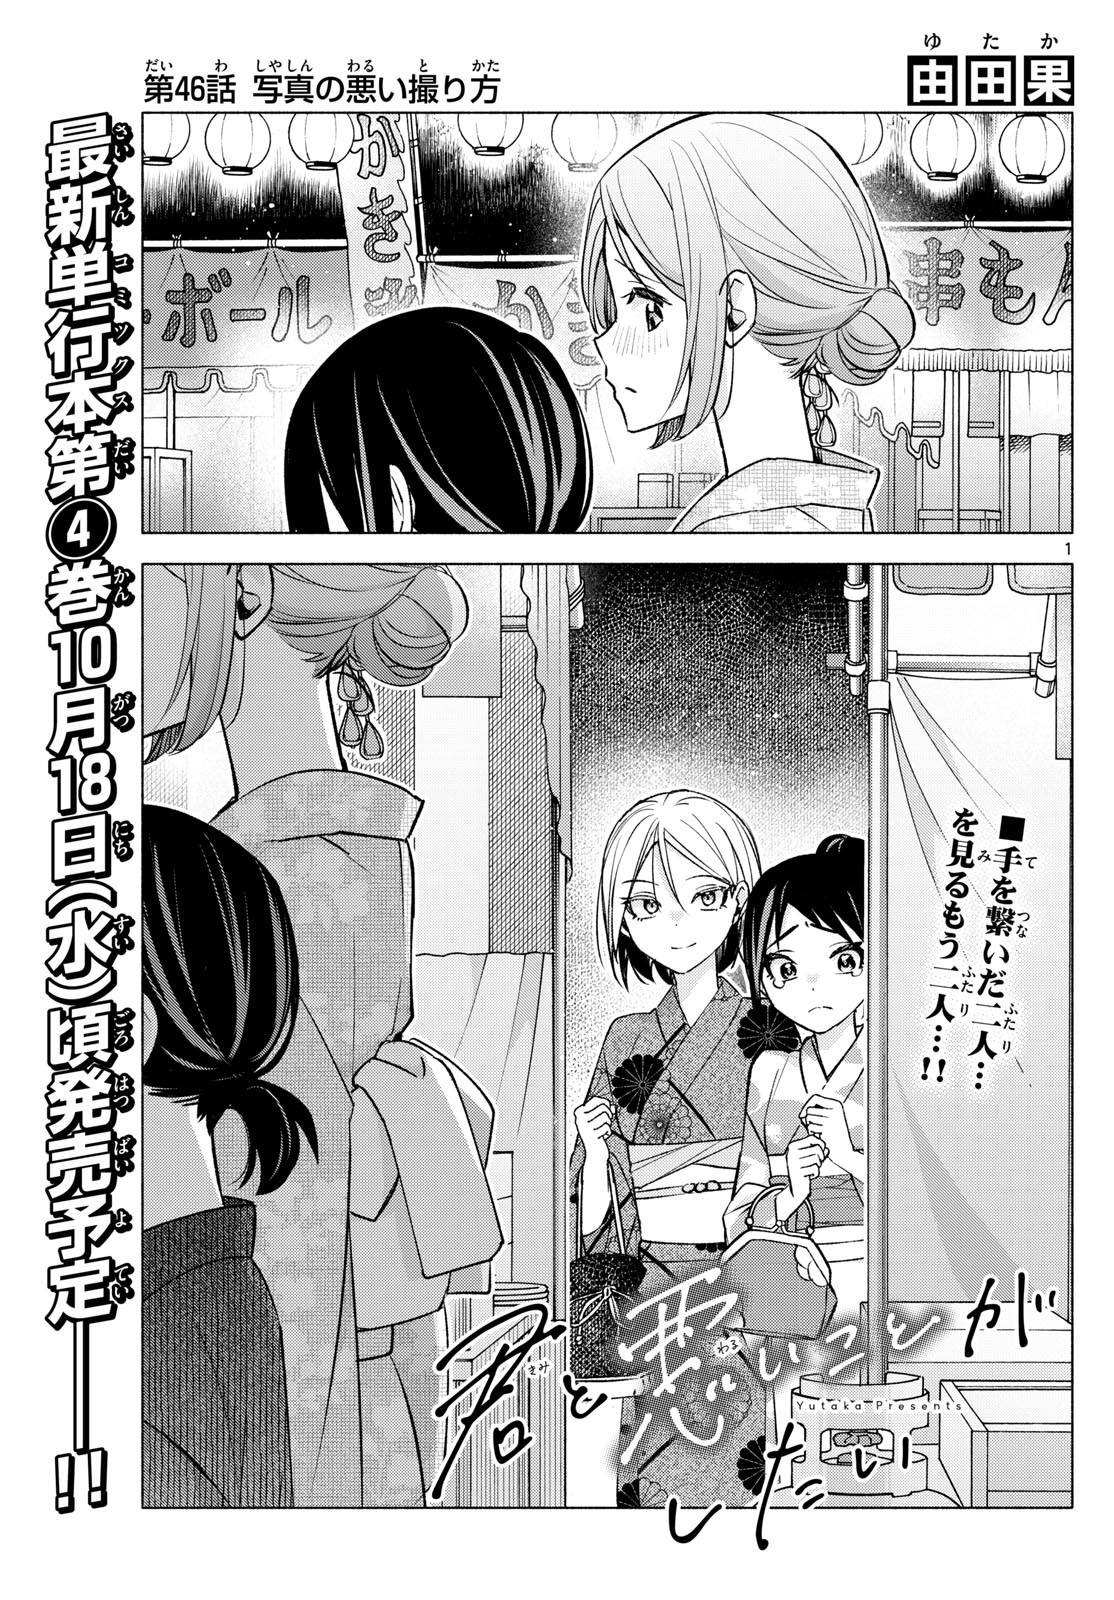 Kimi to Warui Koto ga Shitai - Chapter 046 - Page 1